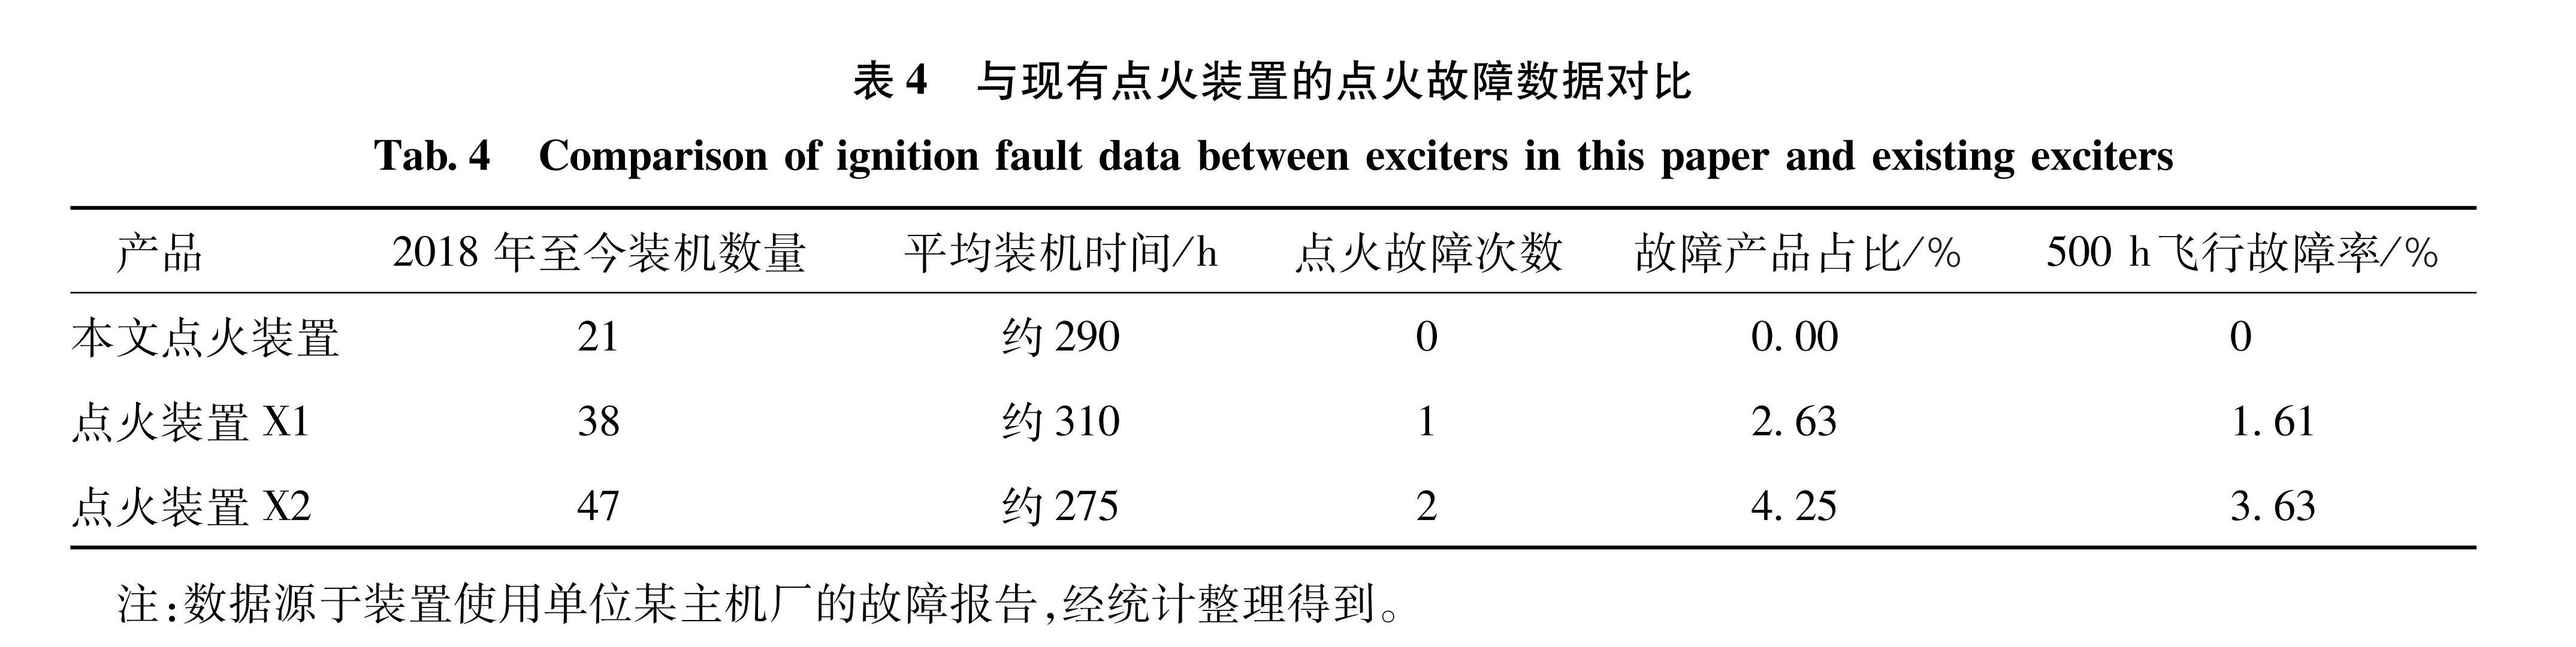 表4 与现有点火装置的点火故障数据对比<br/>Tab.4 Comparison of ignition fault data between exciters in this paper and existing exciters